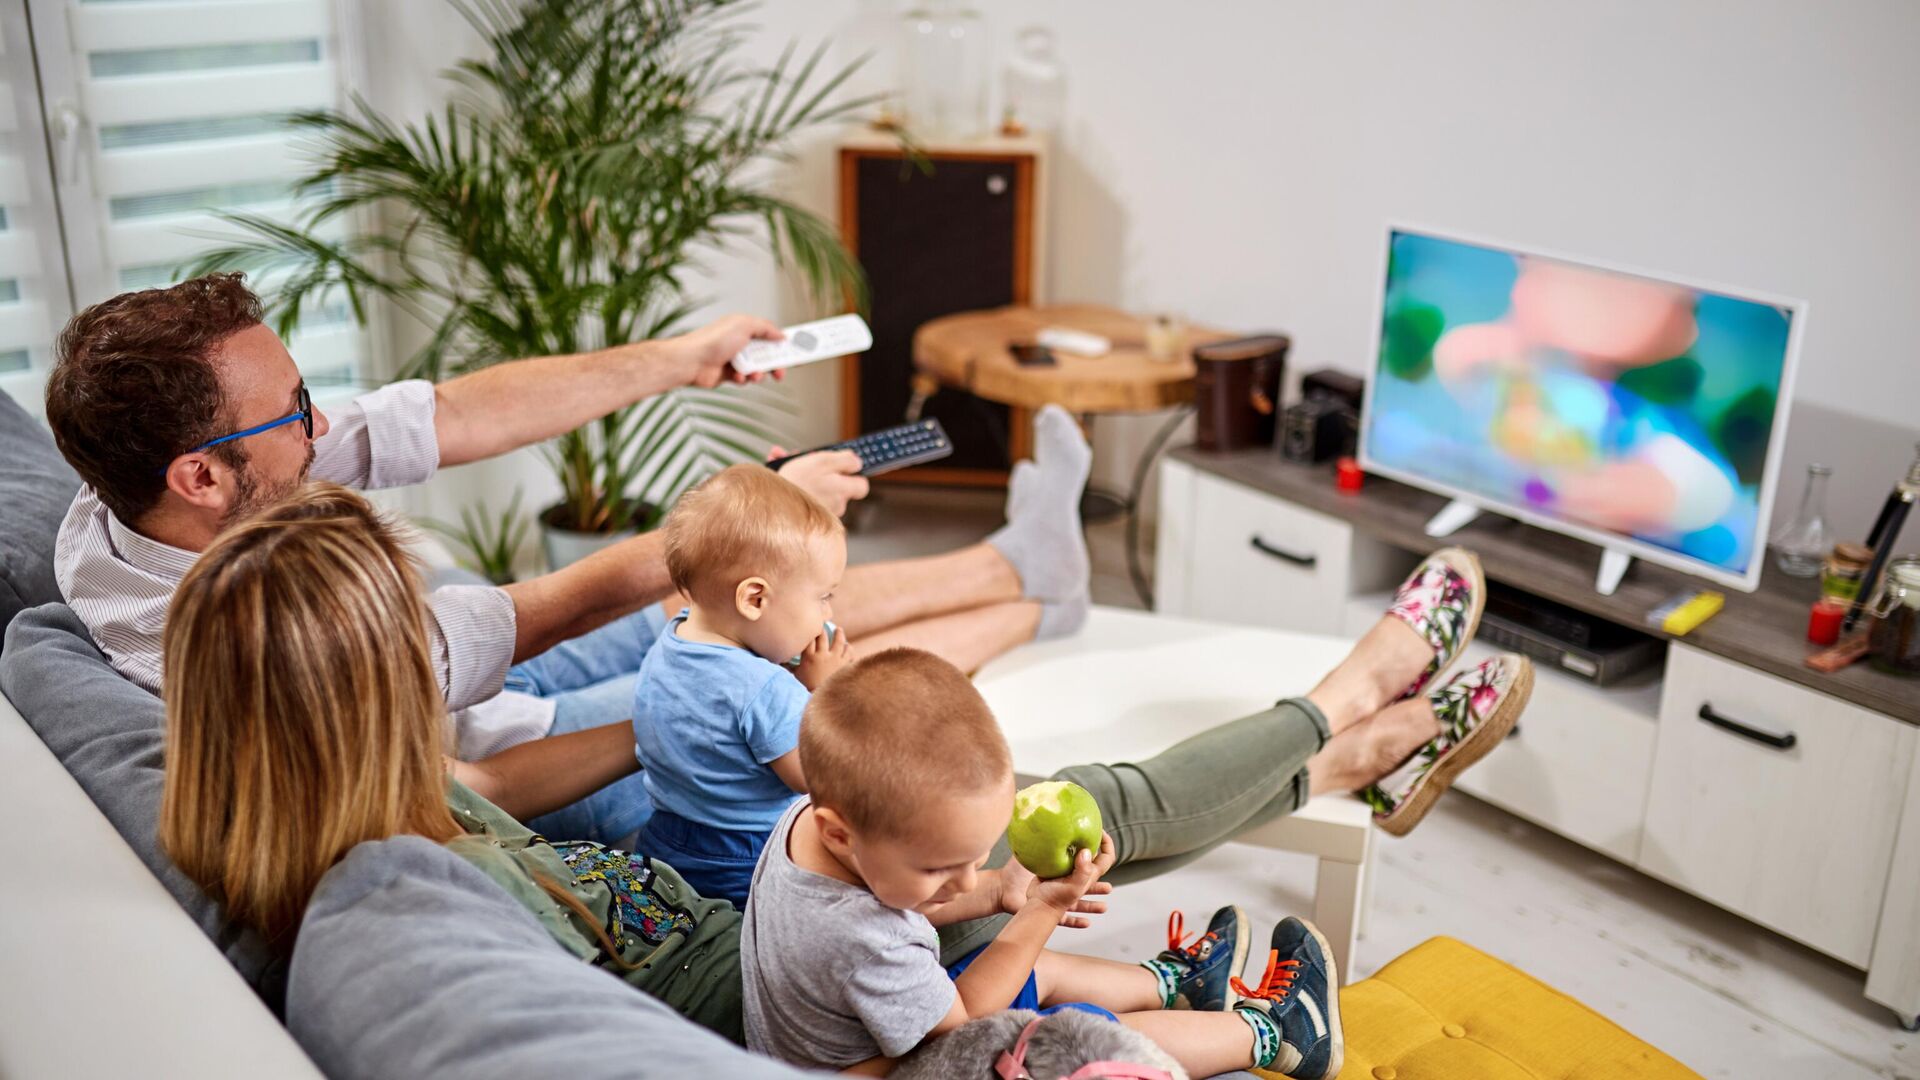 Громко смотрит телевизор. Семья у телевизора. Телевизор для детей. Человек смотрит телевизор. Семейный просмотр телевизора.